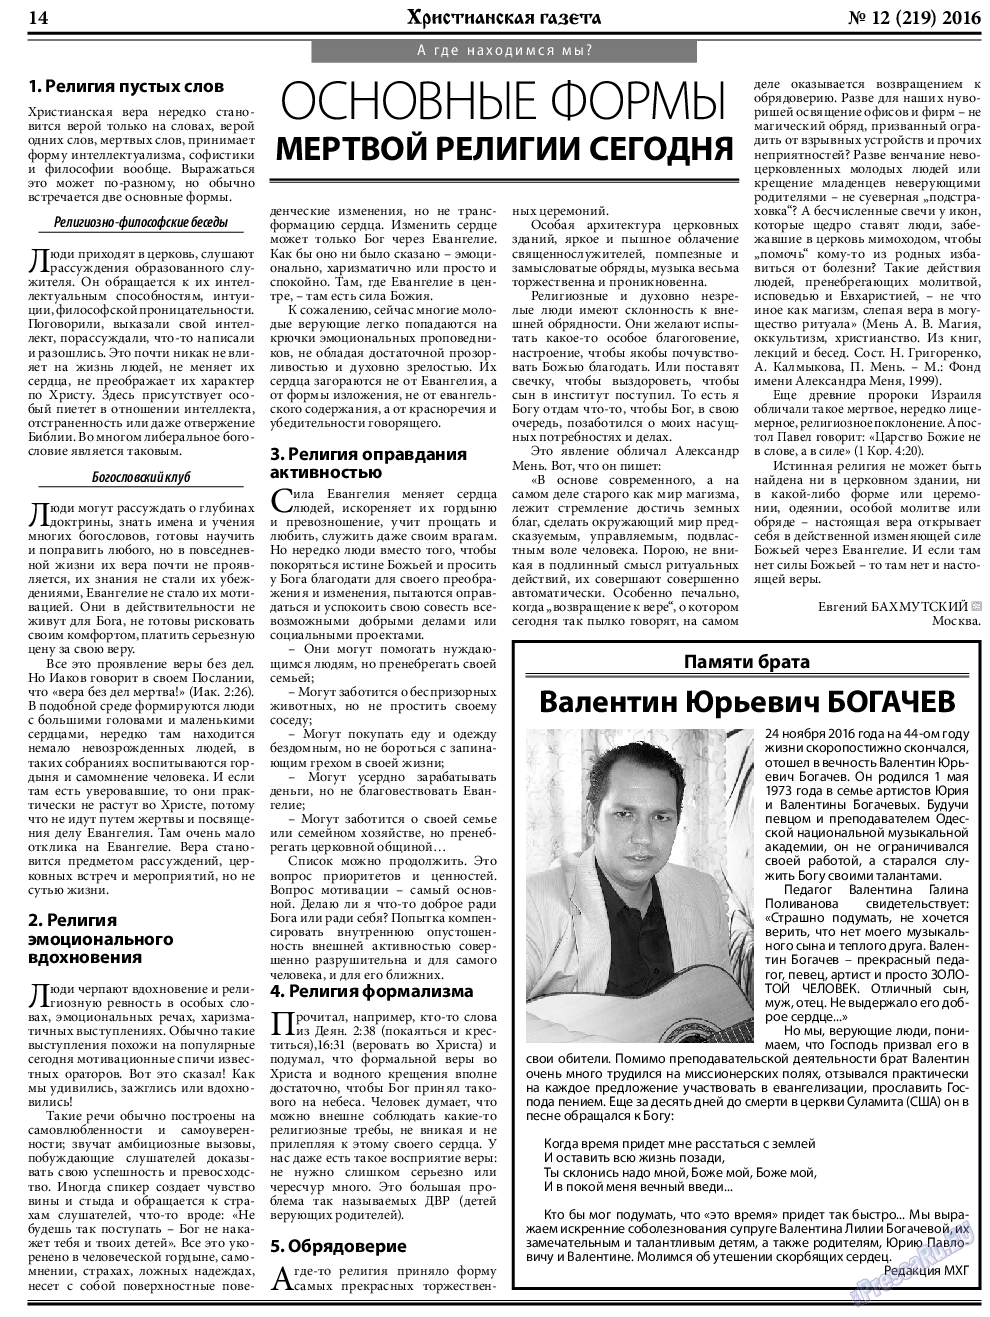 Христианская газета, газета. 2016 №12 стр.22